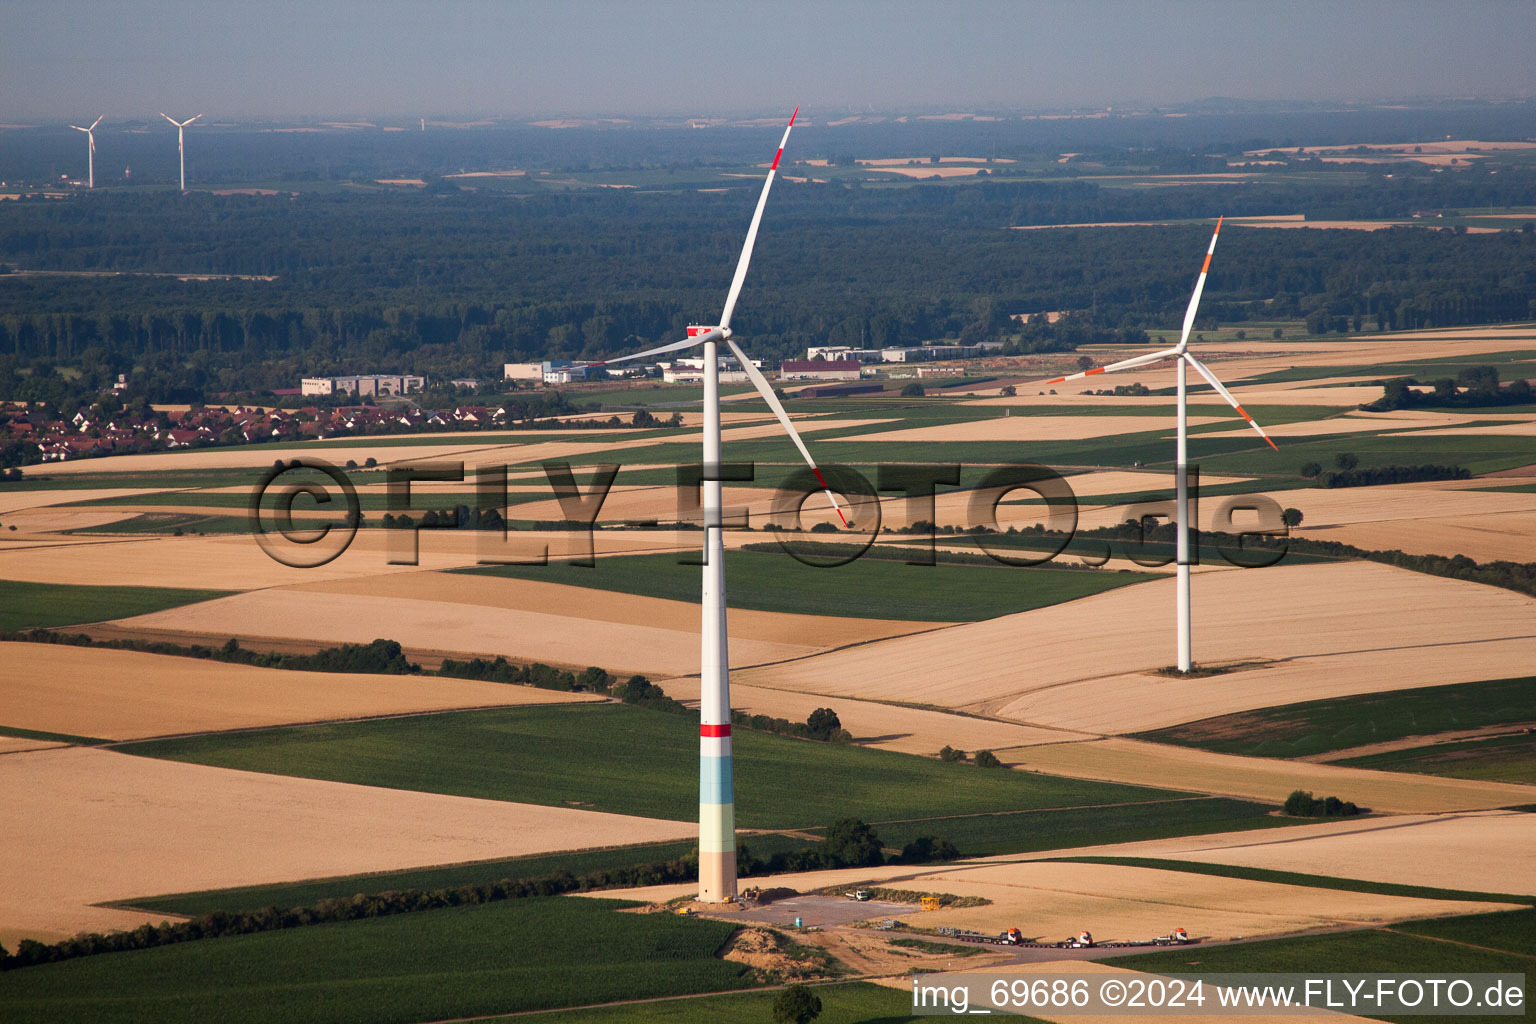 Vue oblique de Construction de parc éolien à Offenbach an der Queich dans le département Rhénanie-Palatinat, Allemagne